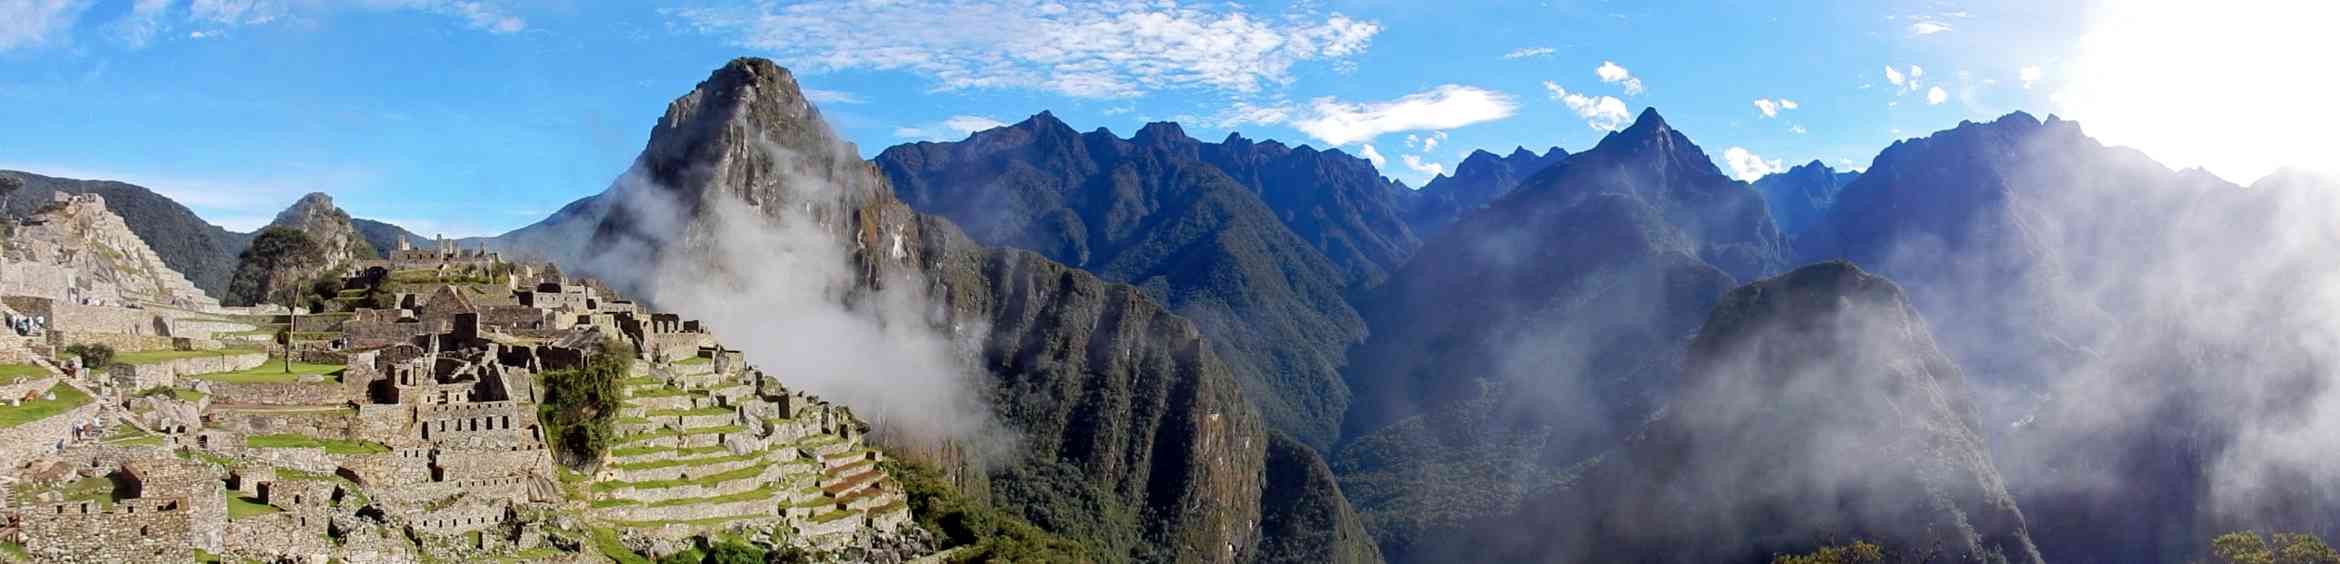 Panaroma of Machu Picchu 